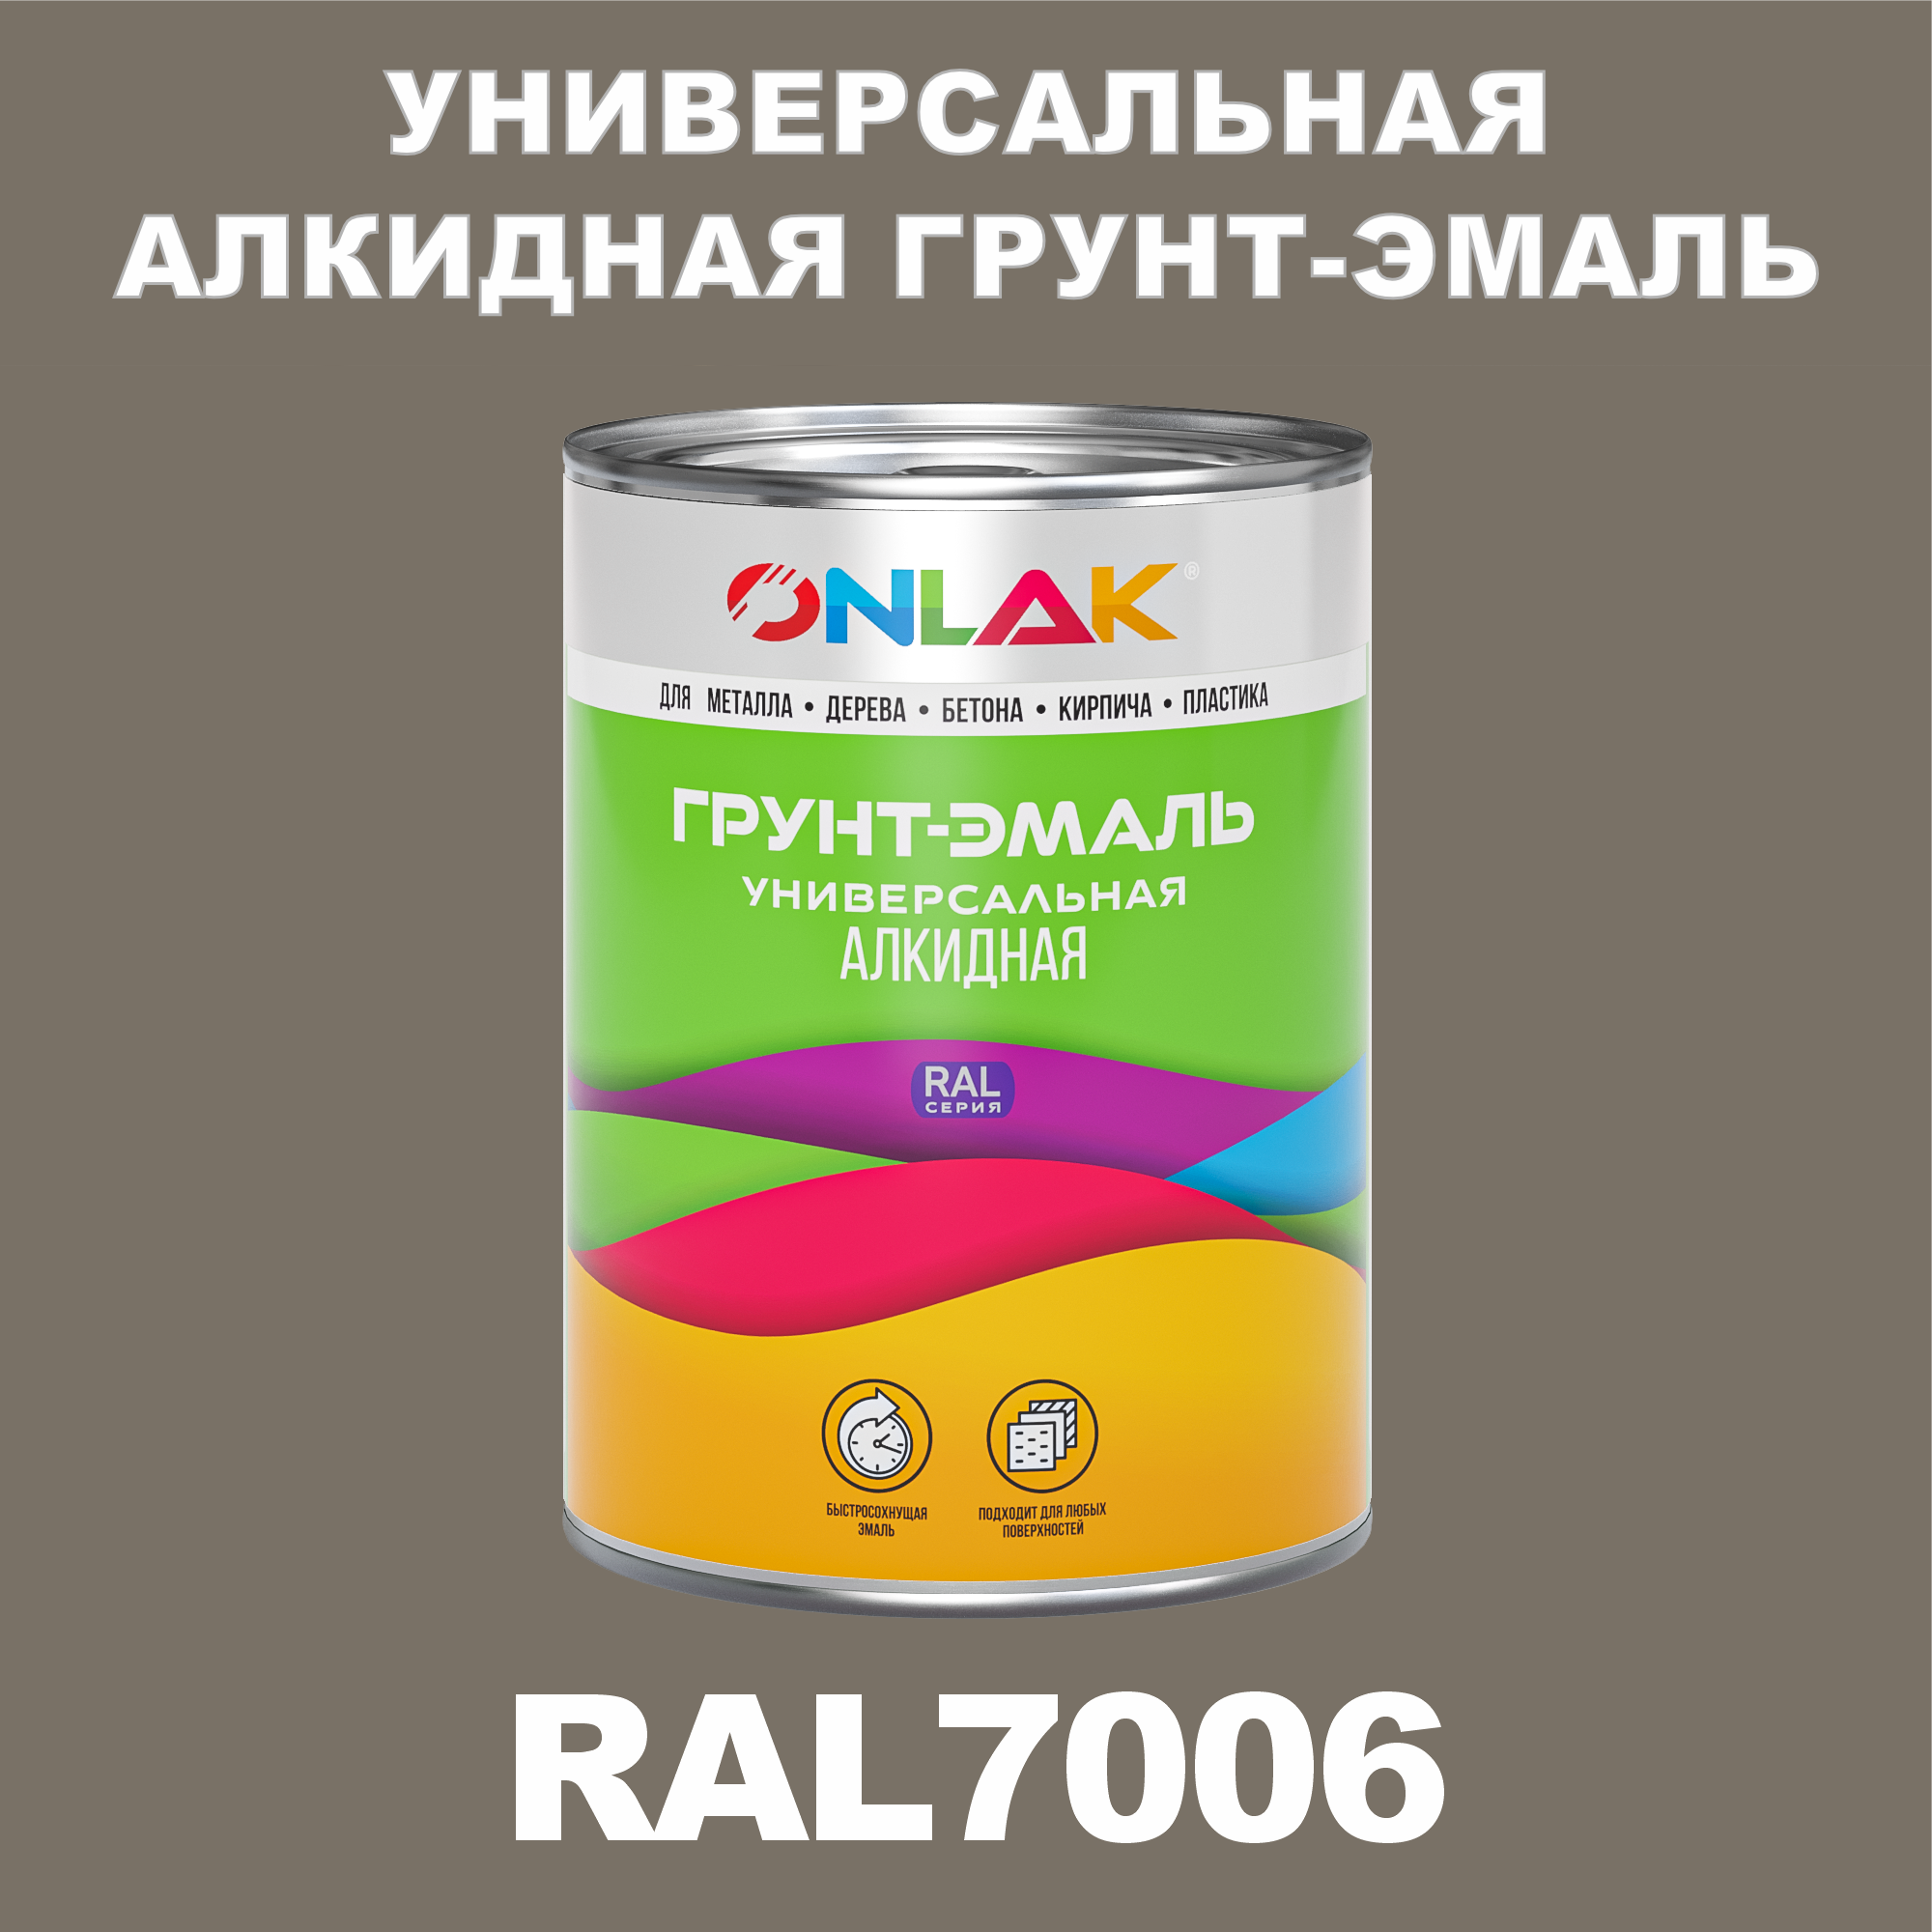 Грунт-эмаль ONLAK 1К RAL7006 антикоррозионная алкидная по металлу по ржавчине 1 кг грунт эмаль аэрозольная престиж 3в1 алкидная коричневая ral 8017 425 мл 0 425 кг